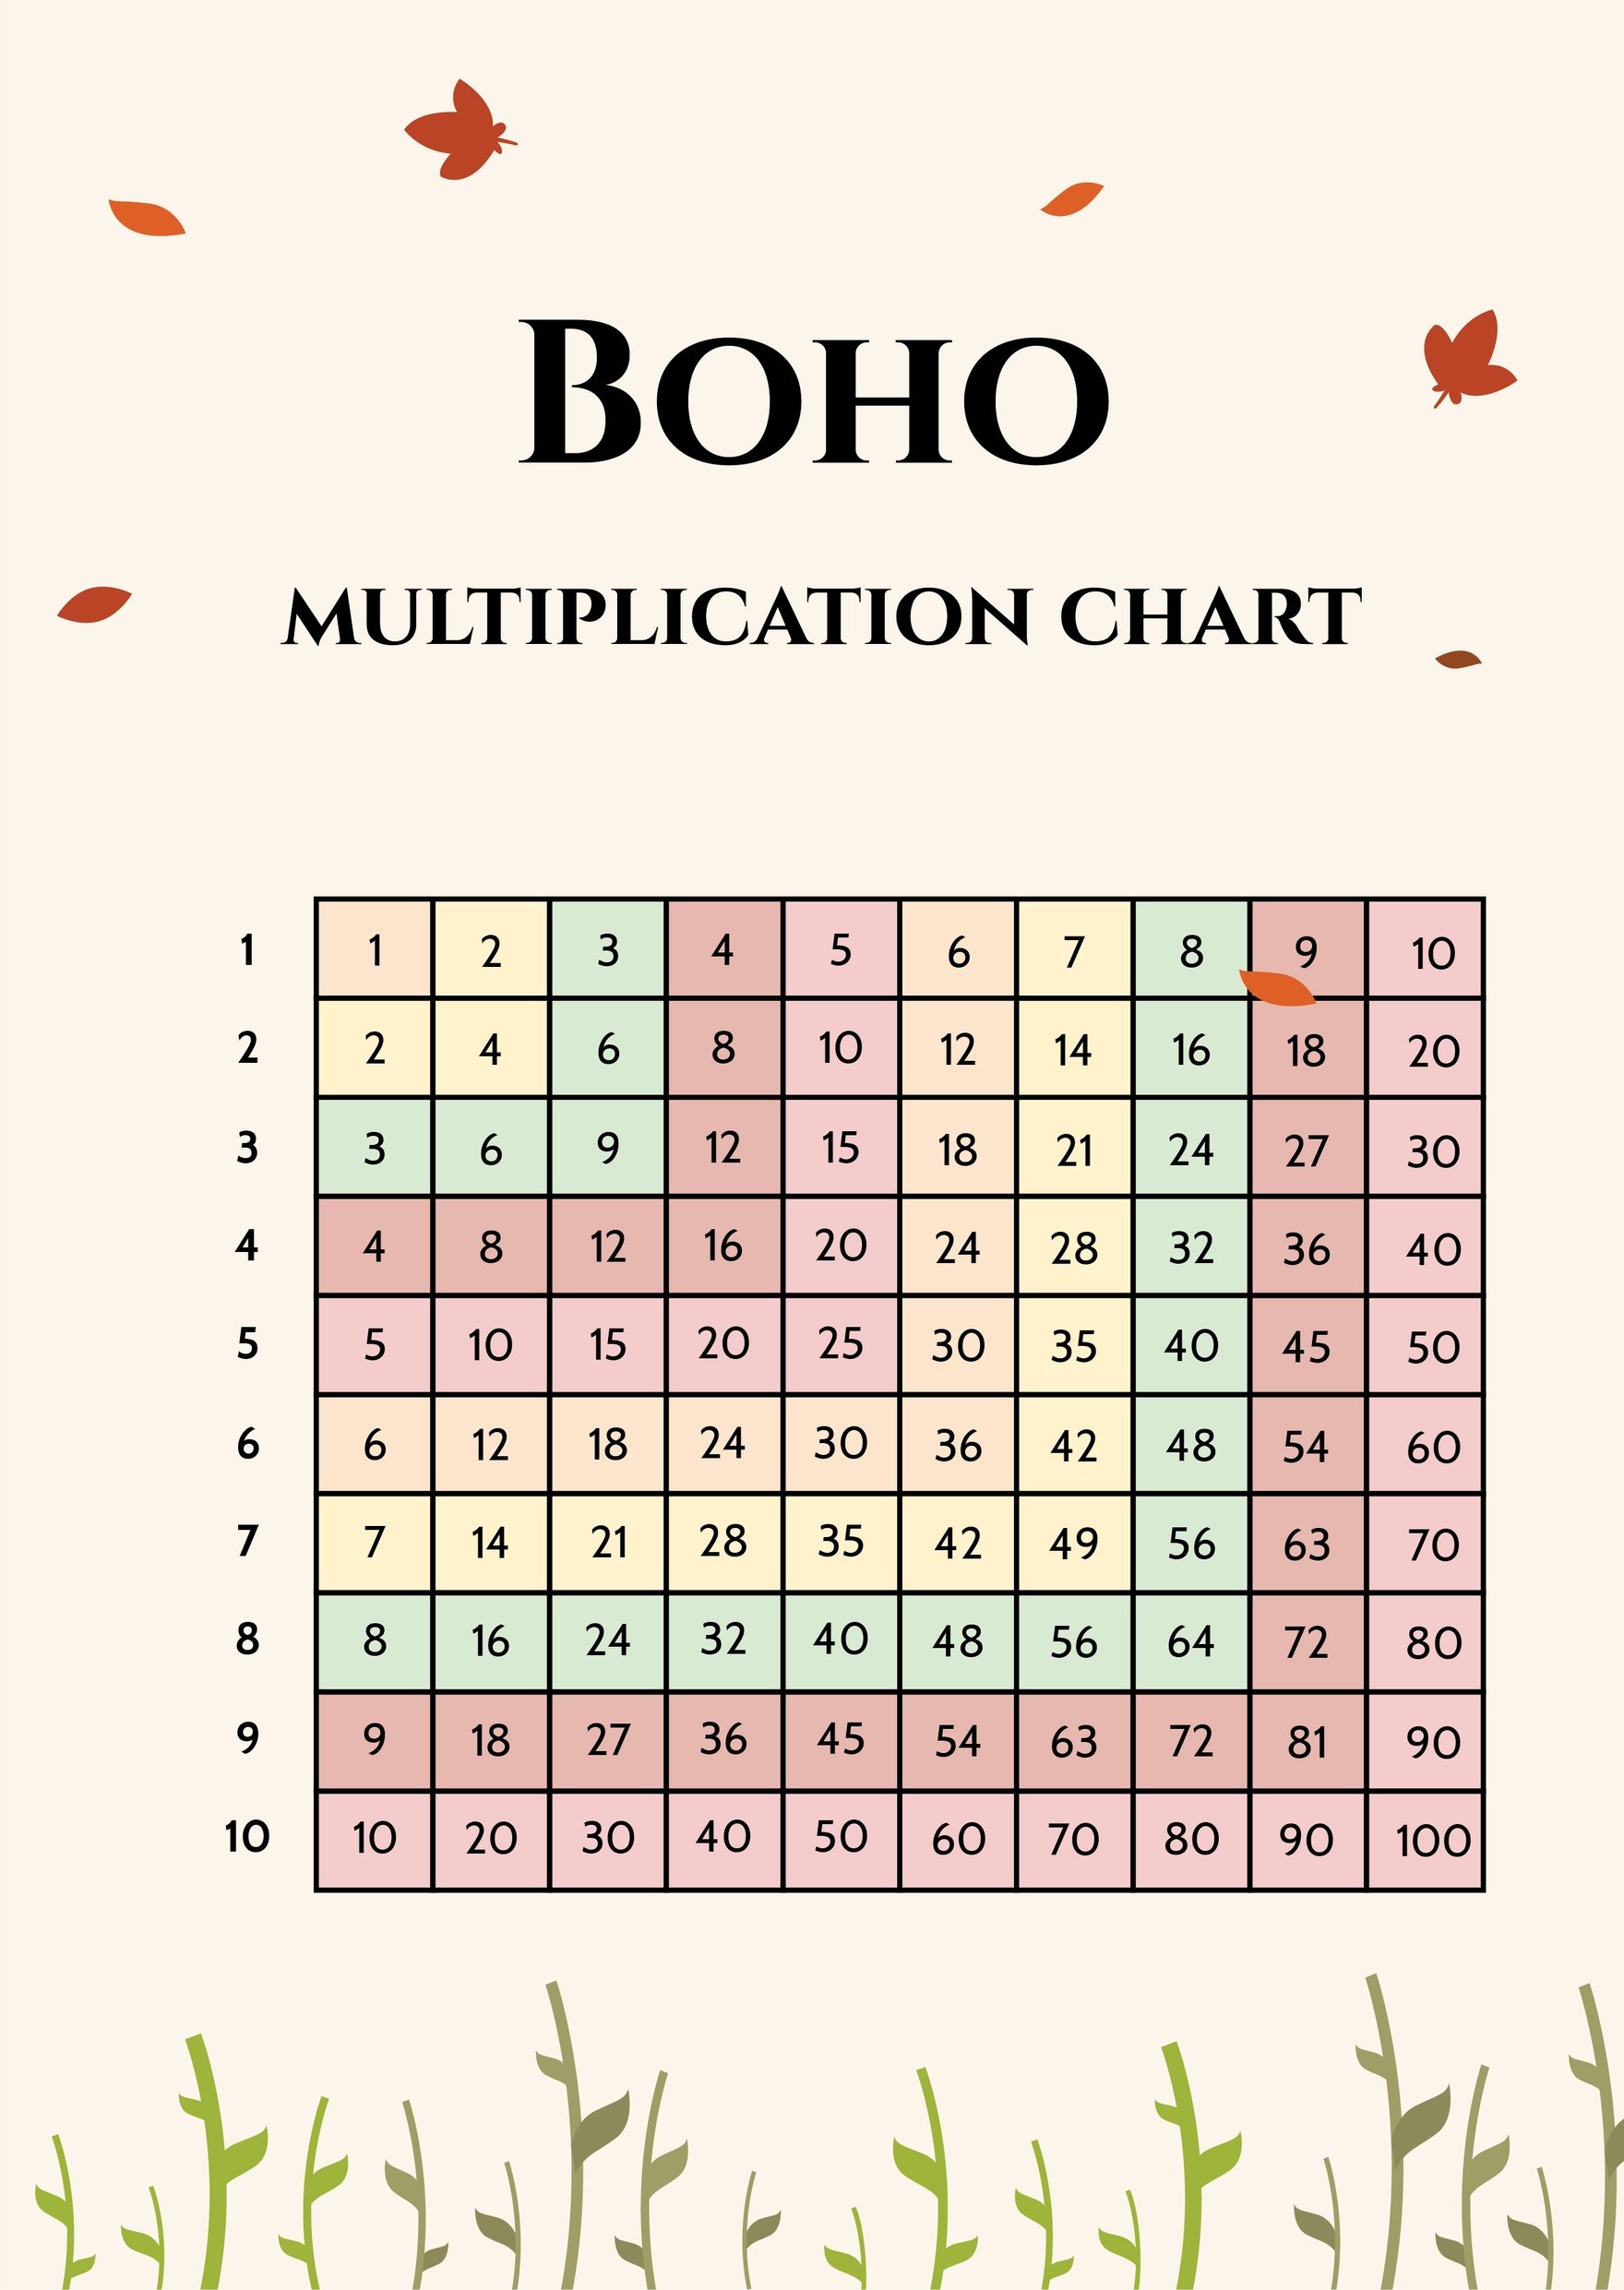 Boho Multiplication Chart